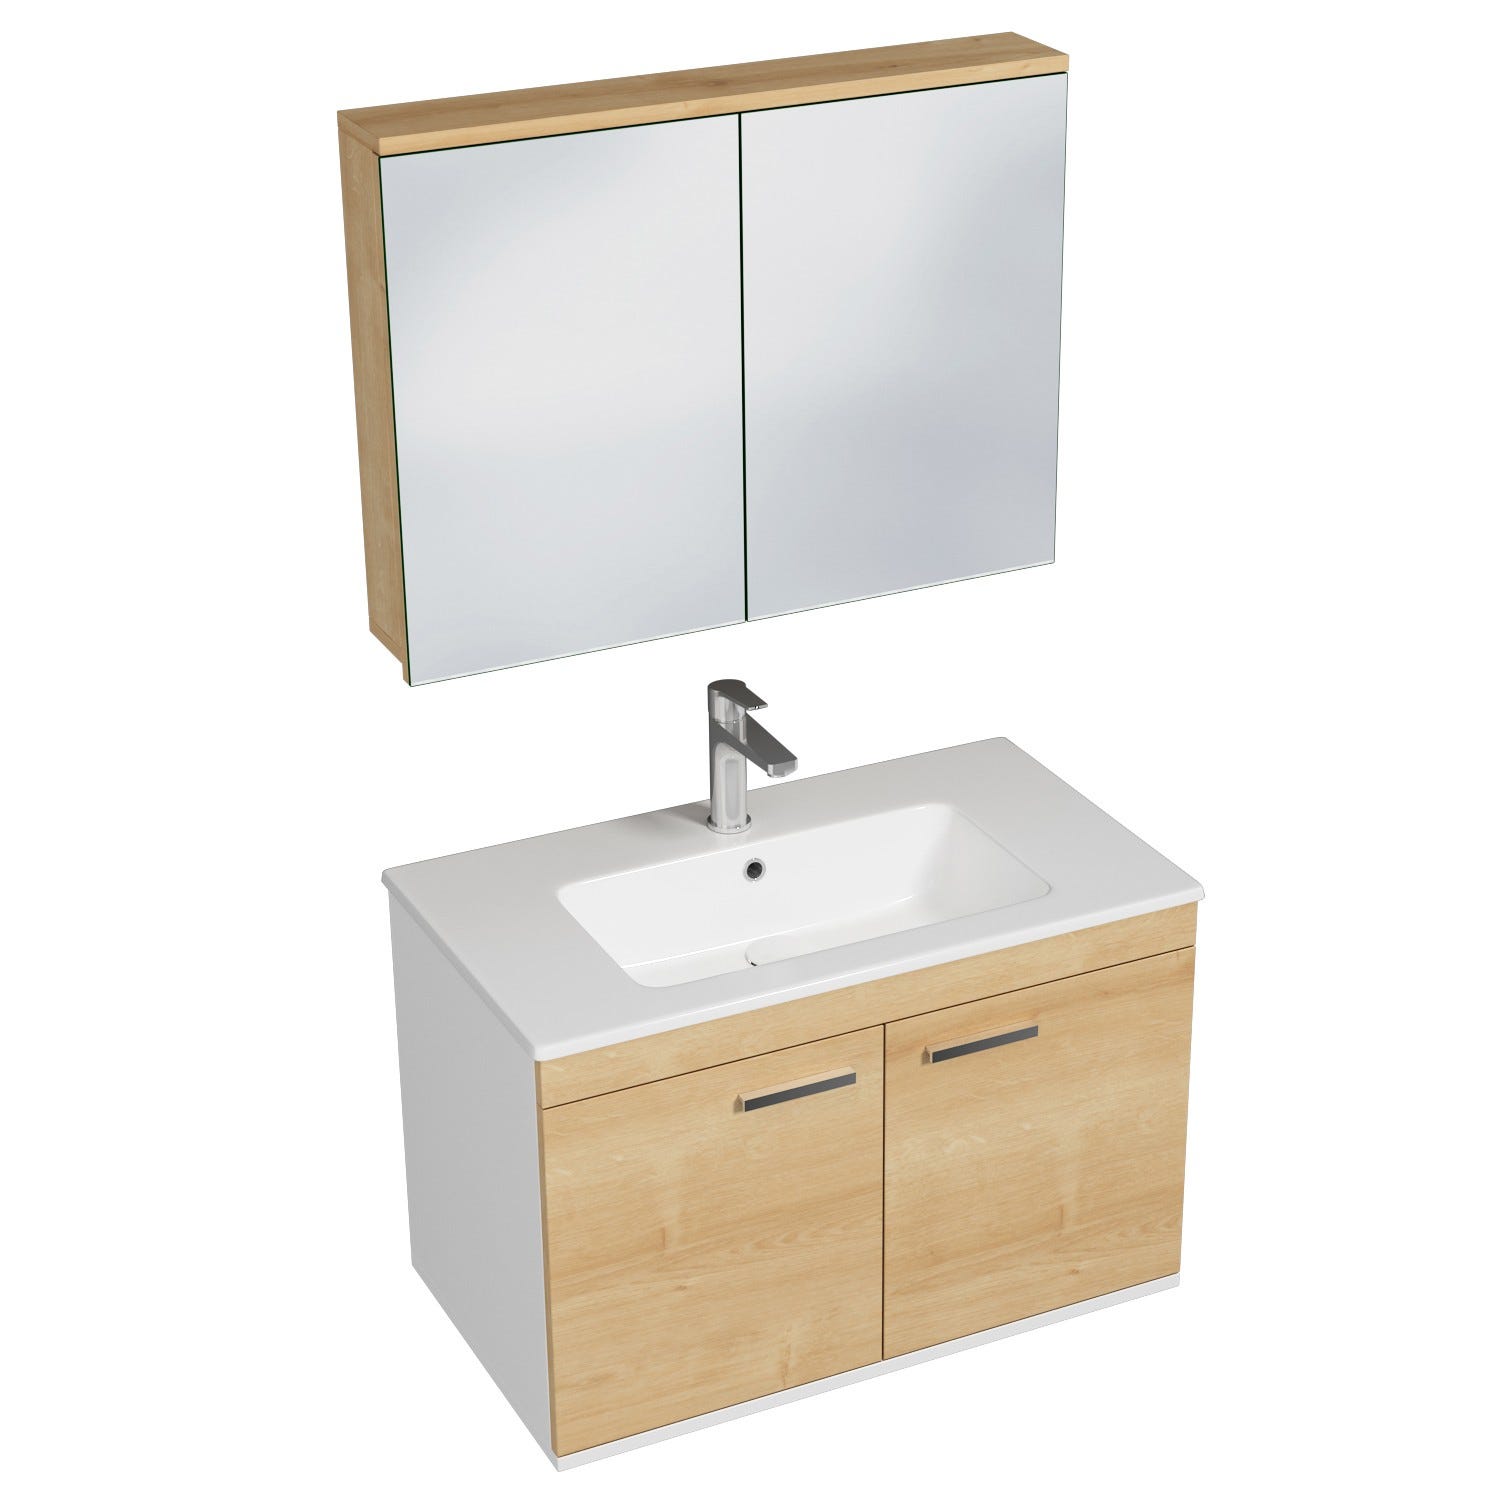 RUBITE Meuble salle de bain simple vasque 2 portes chêne clair largeur 80 cm + miroir armoire 0